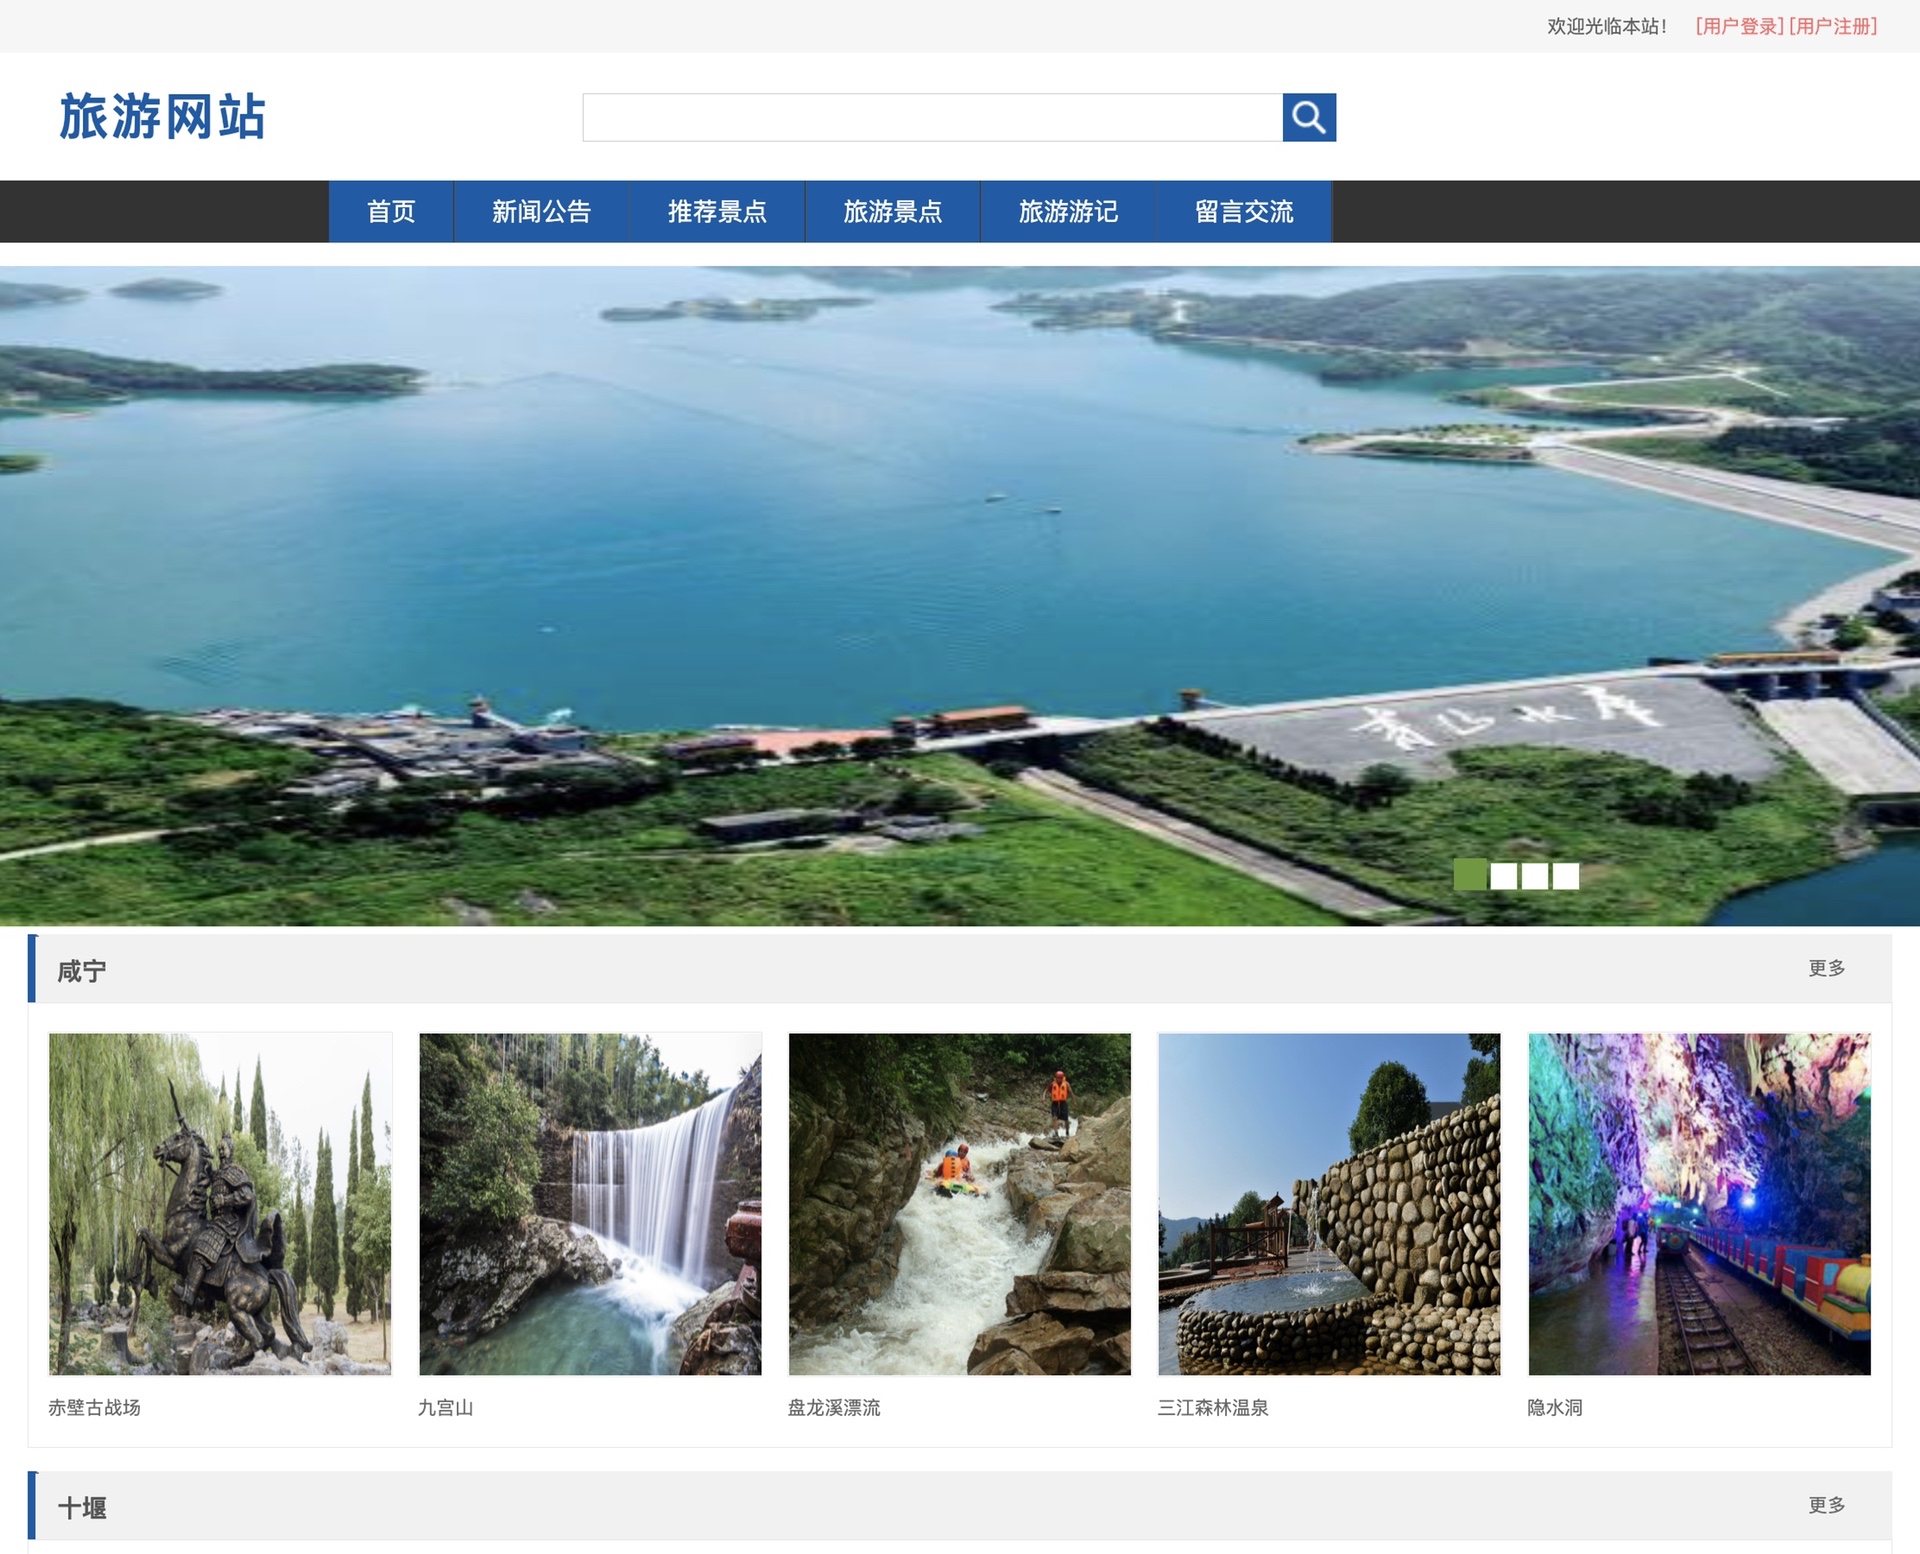 java 旅游管理系统 旅游平台 旅游网站 旅游系统 旅游景